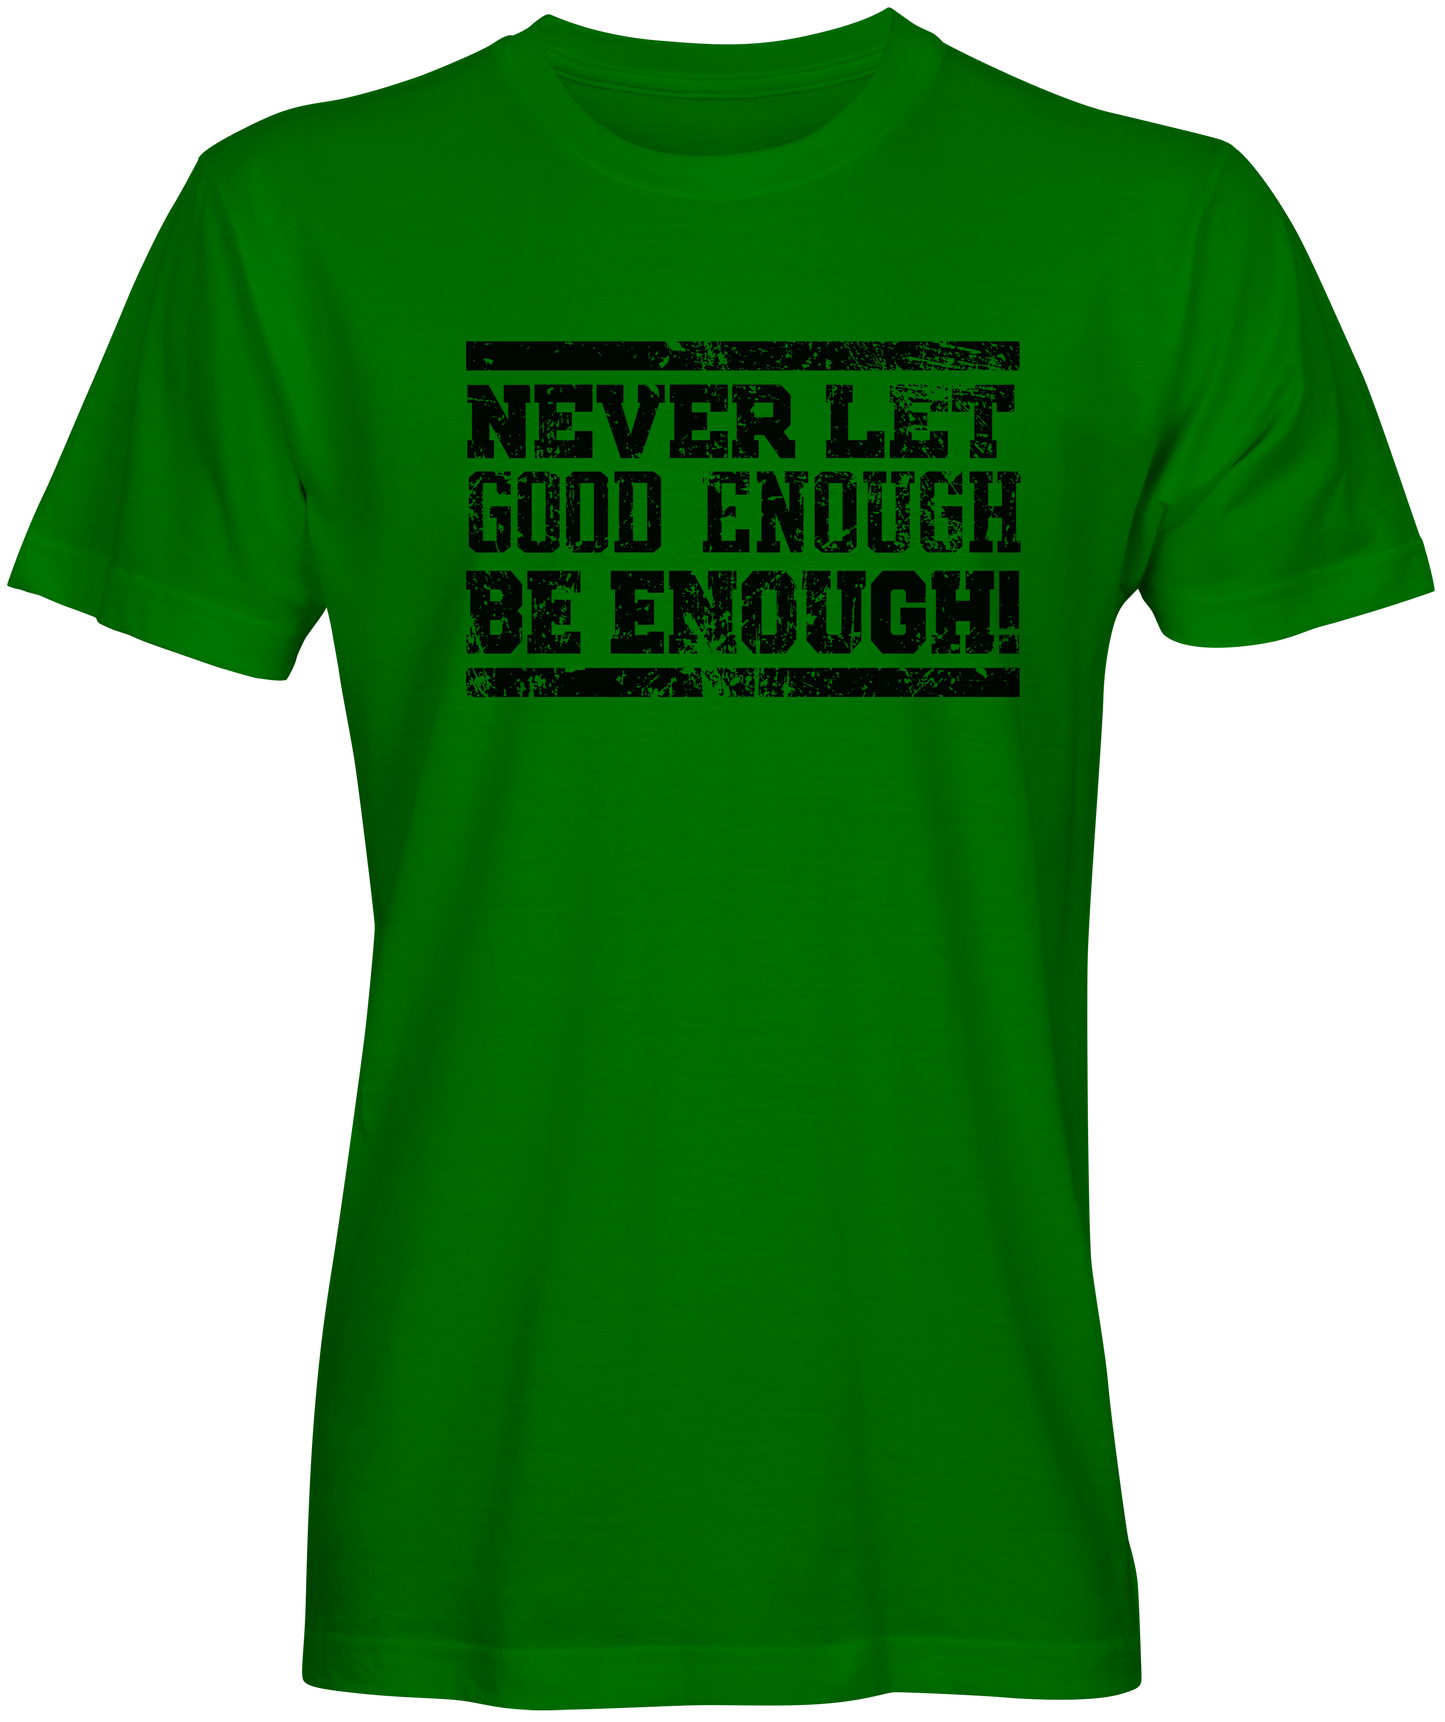 Good enough be enough  Green T-shirt